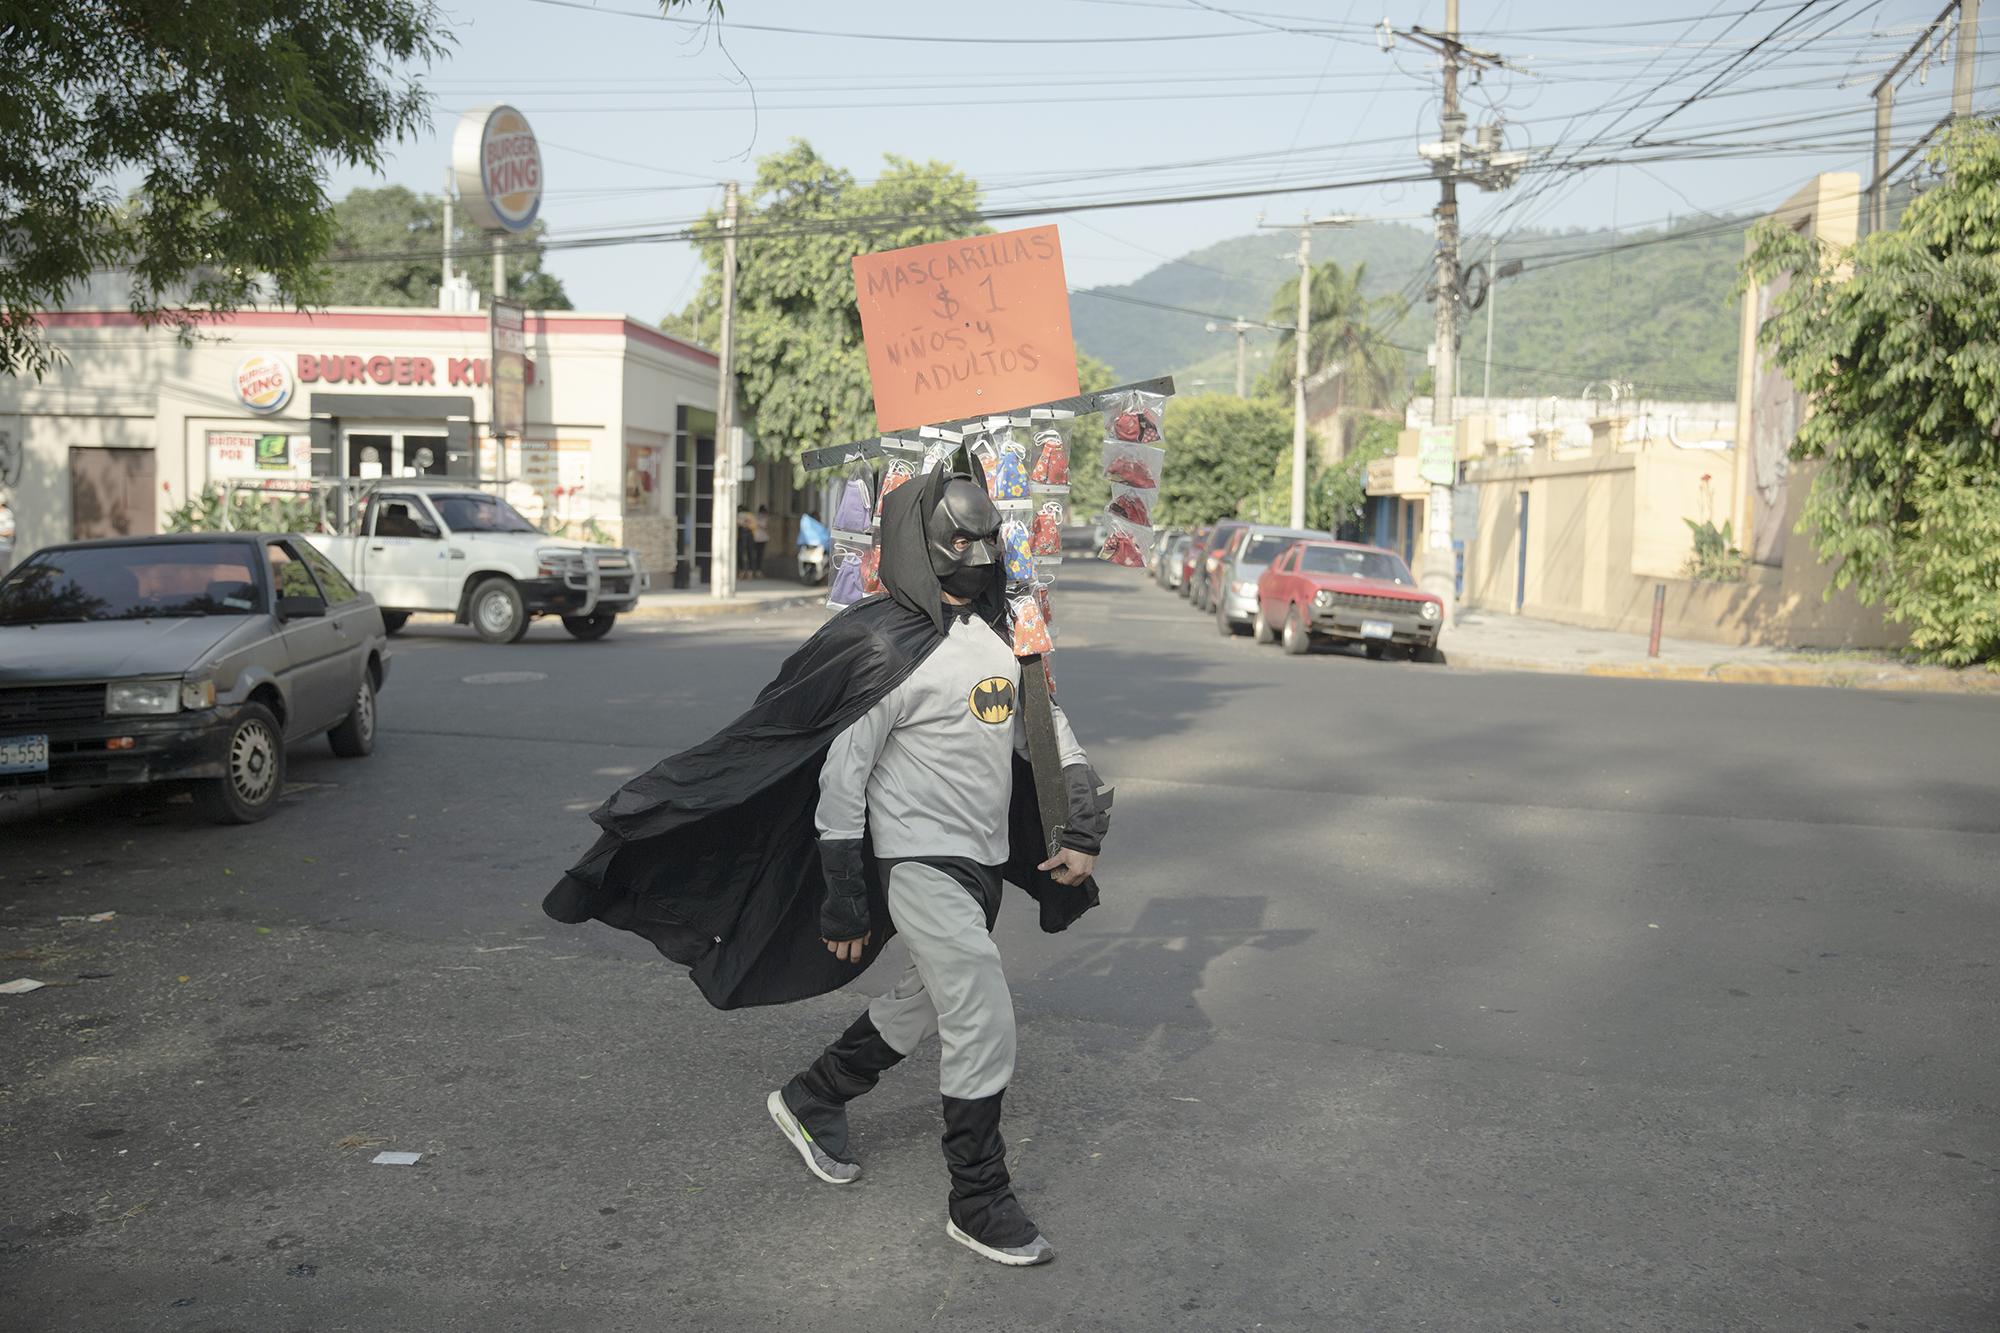 Durante casi toda la cuarentena Batman se ha movilizado en los alrededores de la Plaza San Jacinto para vender las mascarillas que elabora en su casa. Foto de El Faro: Carlos Barrera